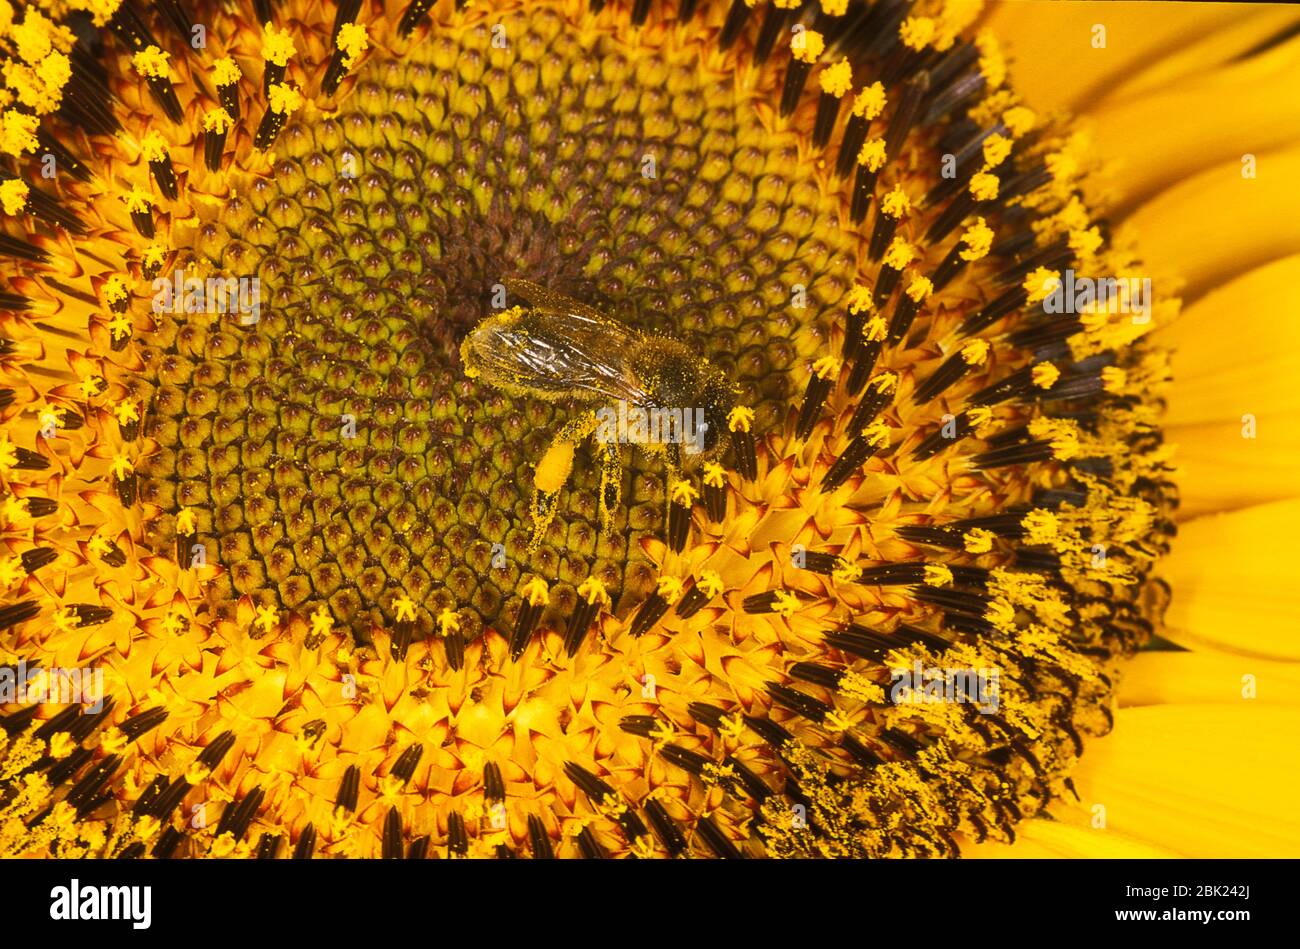 Honey Bee, APIs mellifera, UK, auf Sonnenblumenpflanze, die mit Pollen bedeckt ist Stockfoto